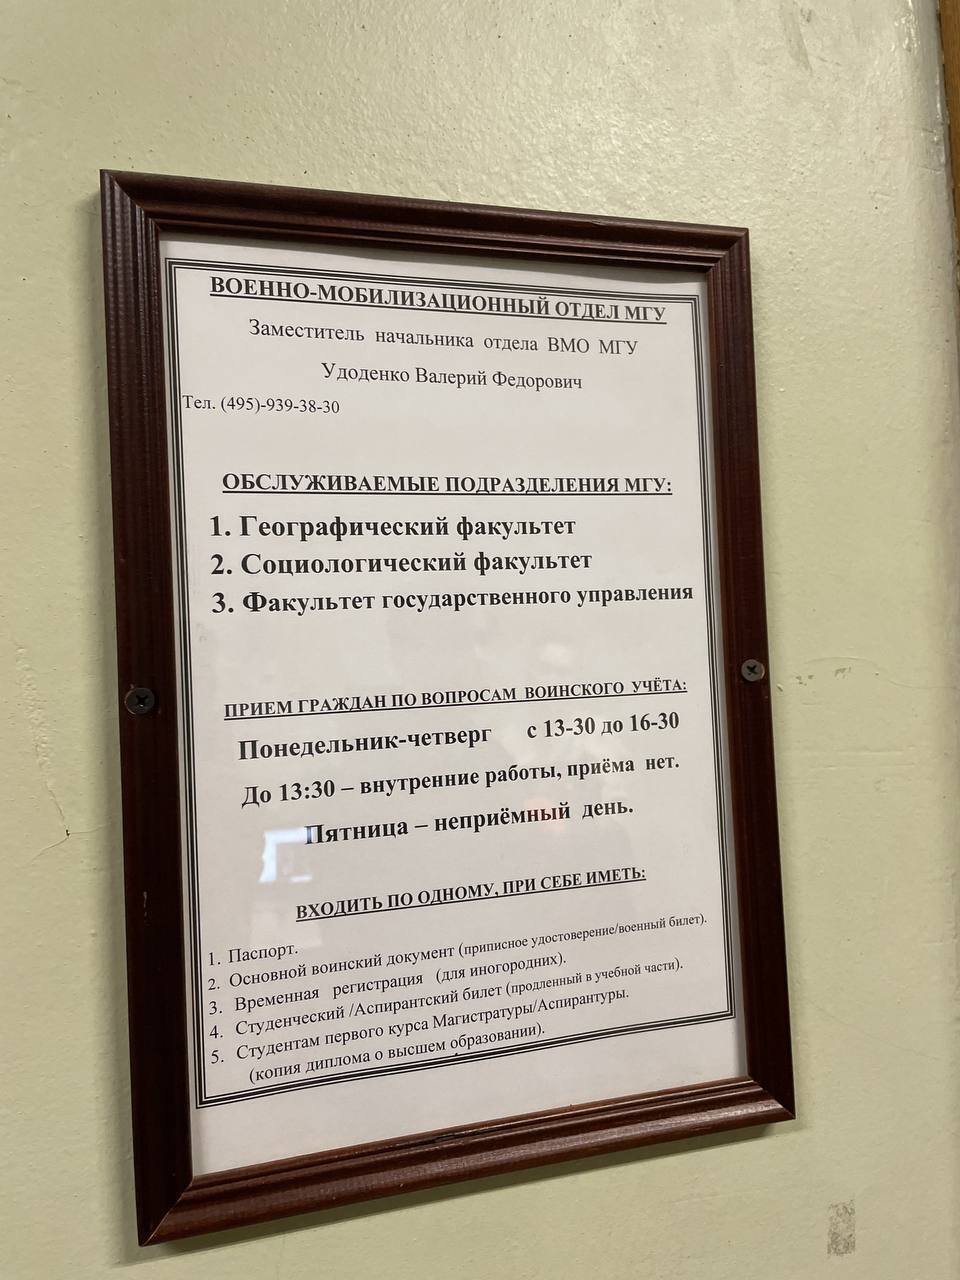 Оголошення військово-мобілізаційного відділу одного з університетів Москви